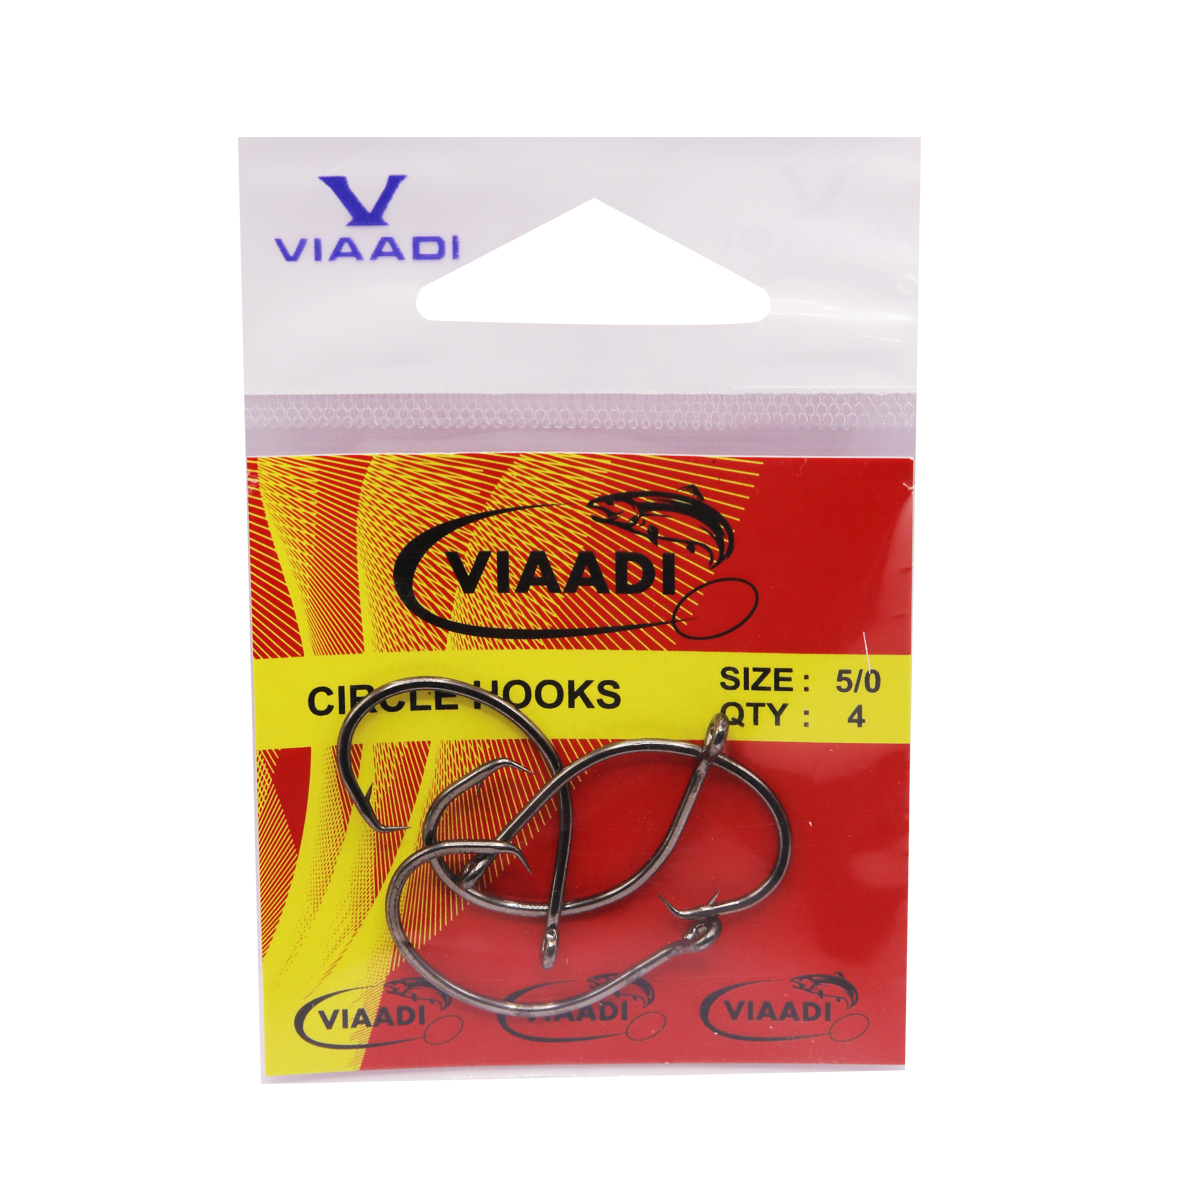 VIAADI CIRCLE HOOKS 5/0 – Viaadi